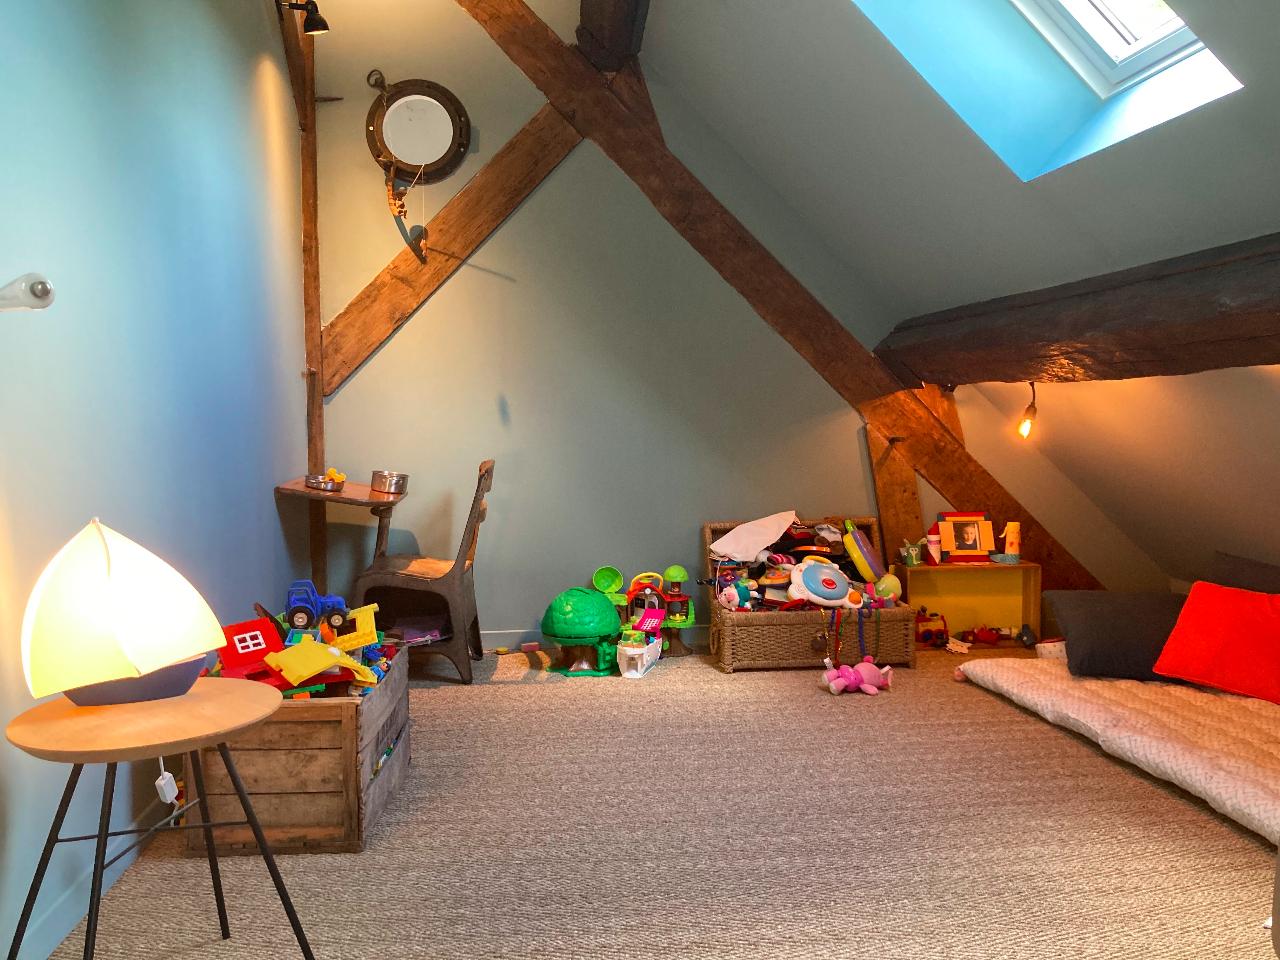 Hôte GreenGo: Maison familiale, îlot de verdure à 45' de Paris, ideal pour une famille avec jeunes enfants - Image 11